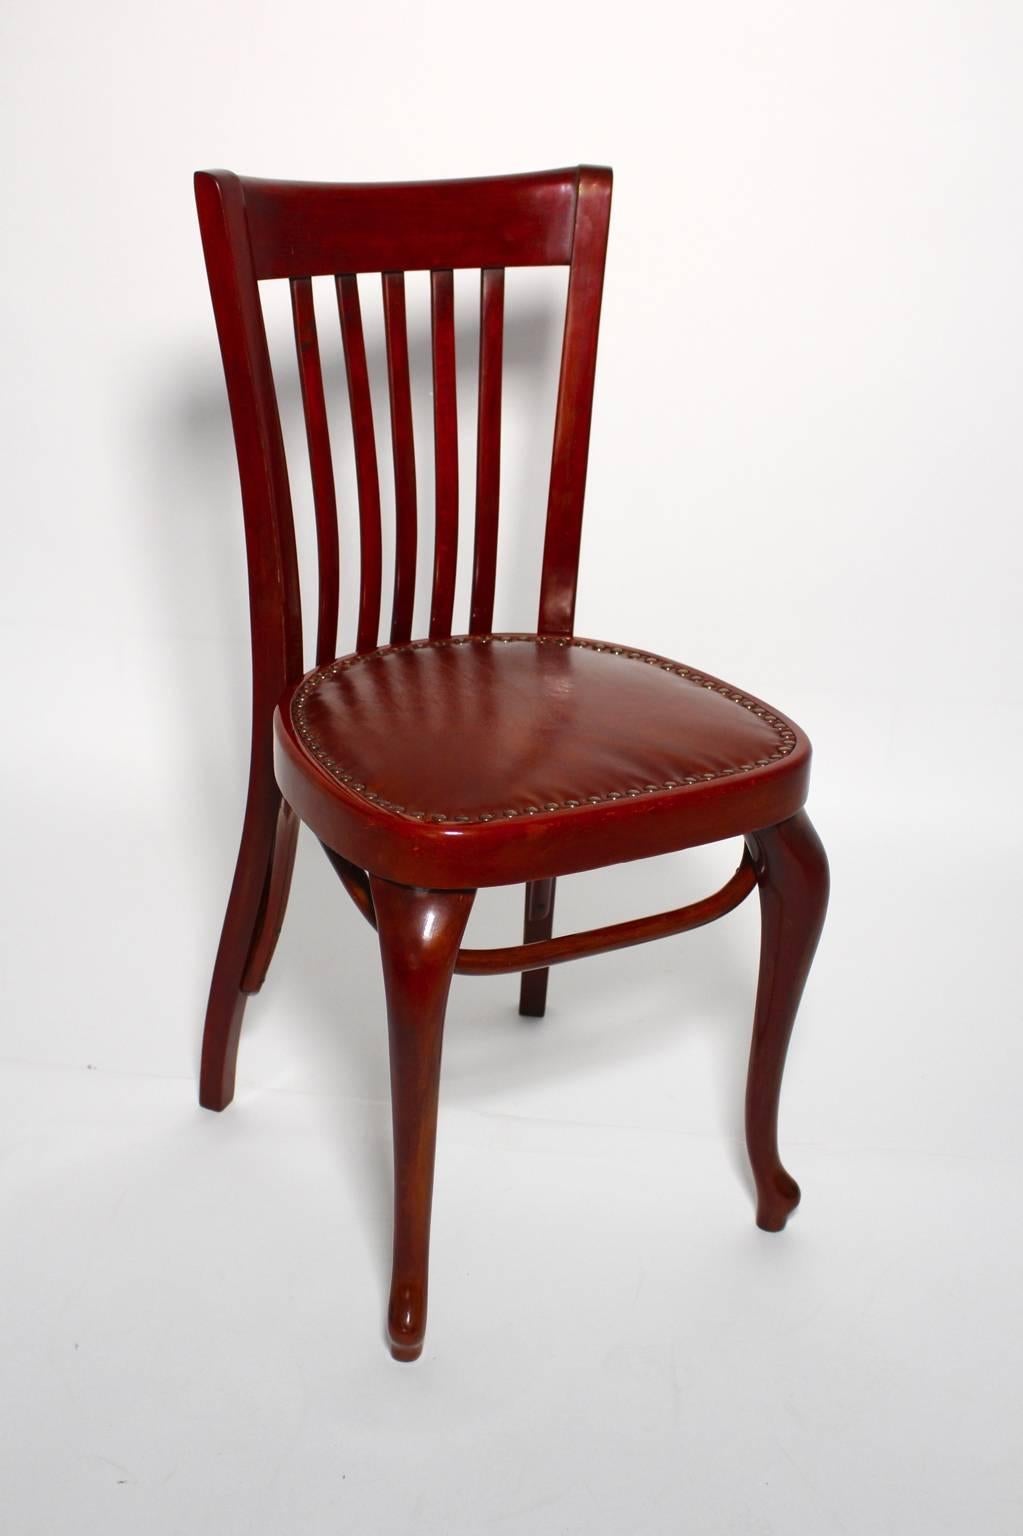 Chaise Vintage By Modèle numéro 519 par Thonet. Adolf Loos a conçu la chaise pour le Café Capua.
Les parties en bois sont polies à la main à la gomme-laque, tandis que le siège est recouvert de cuir brun.
Fabriqué en bois de hêtre teinté et en bois